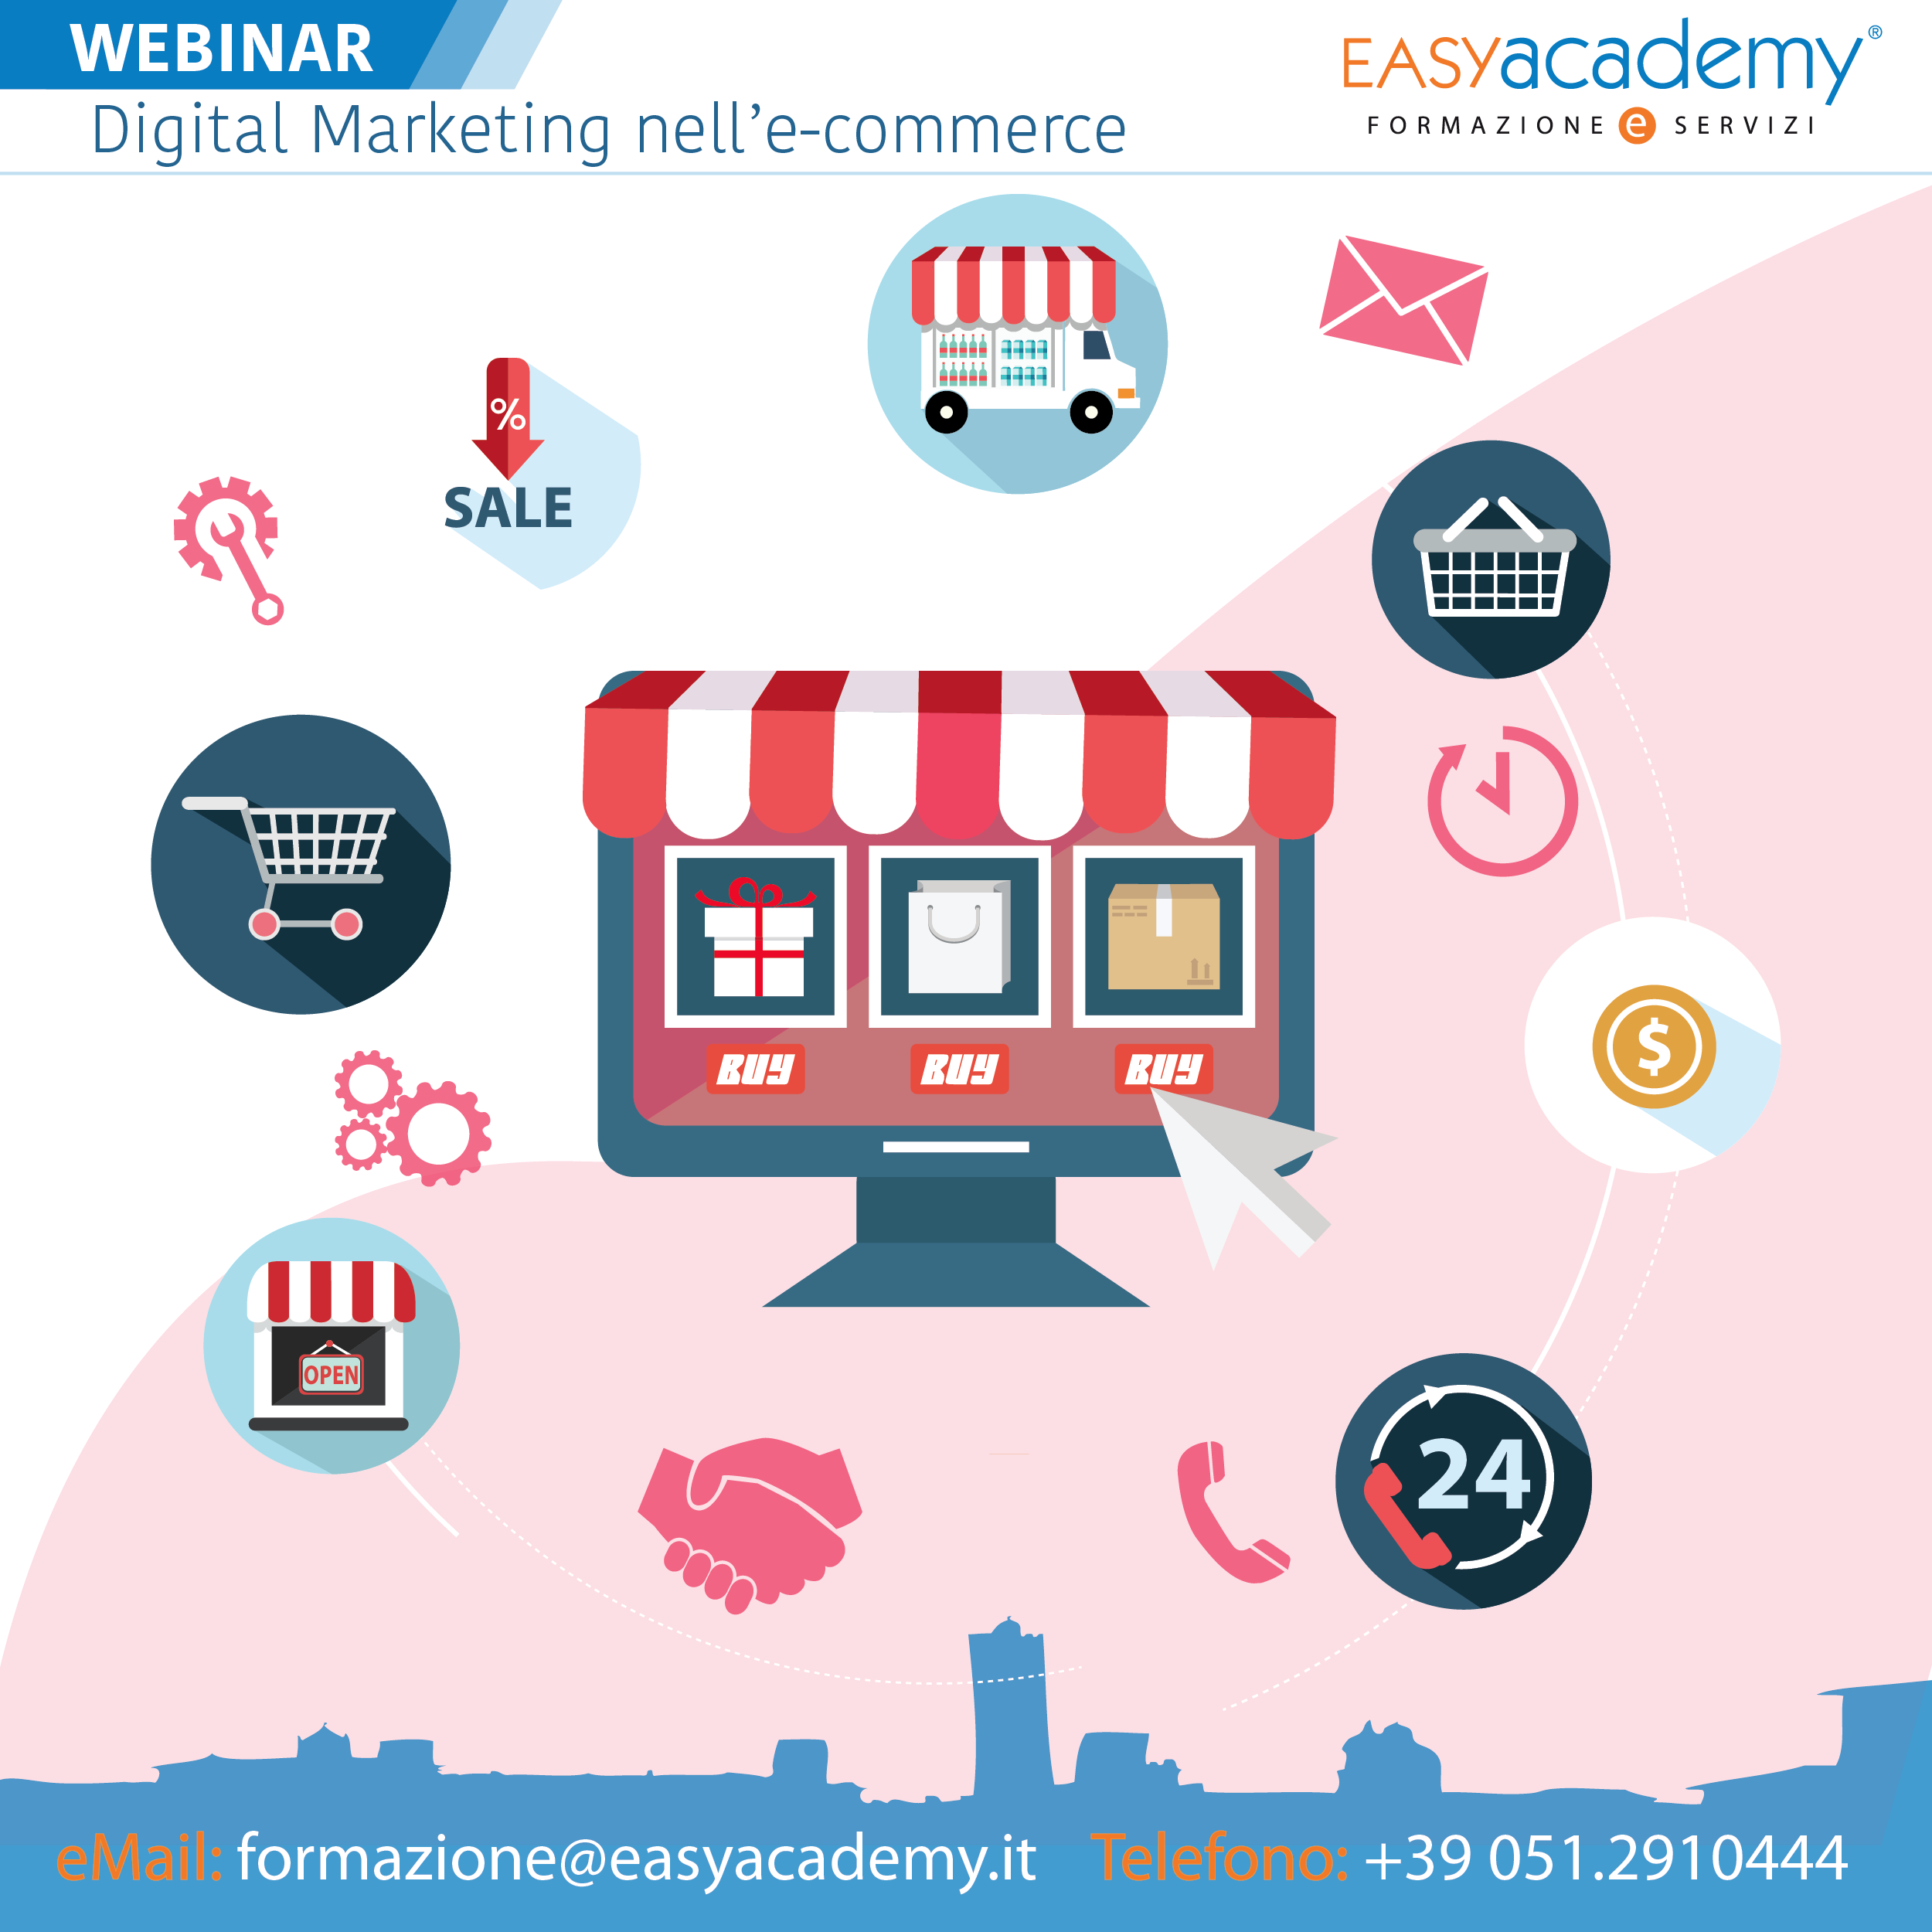 Digital Marketing nell’e-commerce | WEBINAR